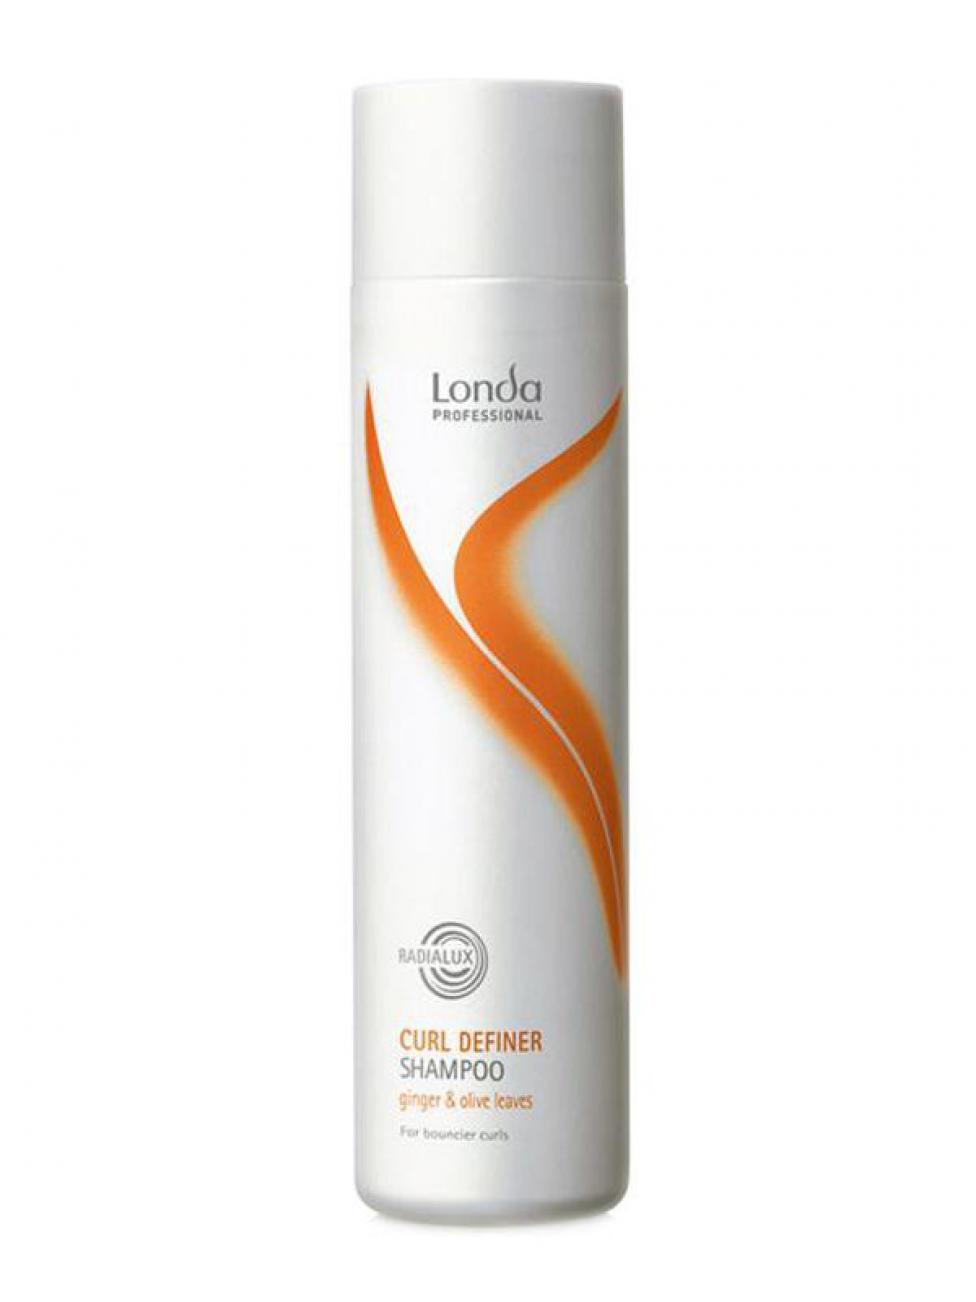 Шампунь від косметичної компанії Londa забезпечує кучерявим волоссям еластичність і виразну форму